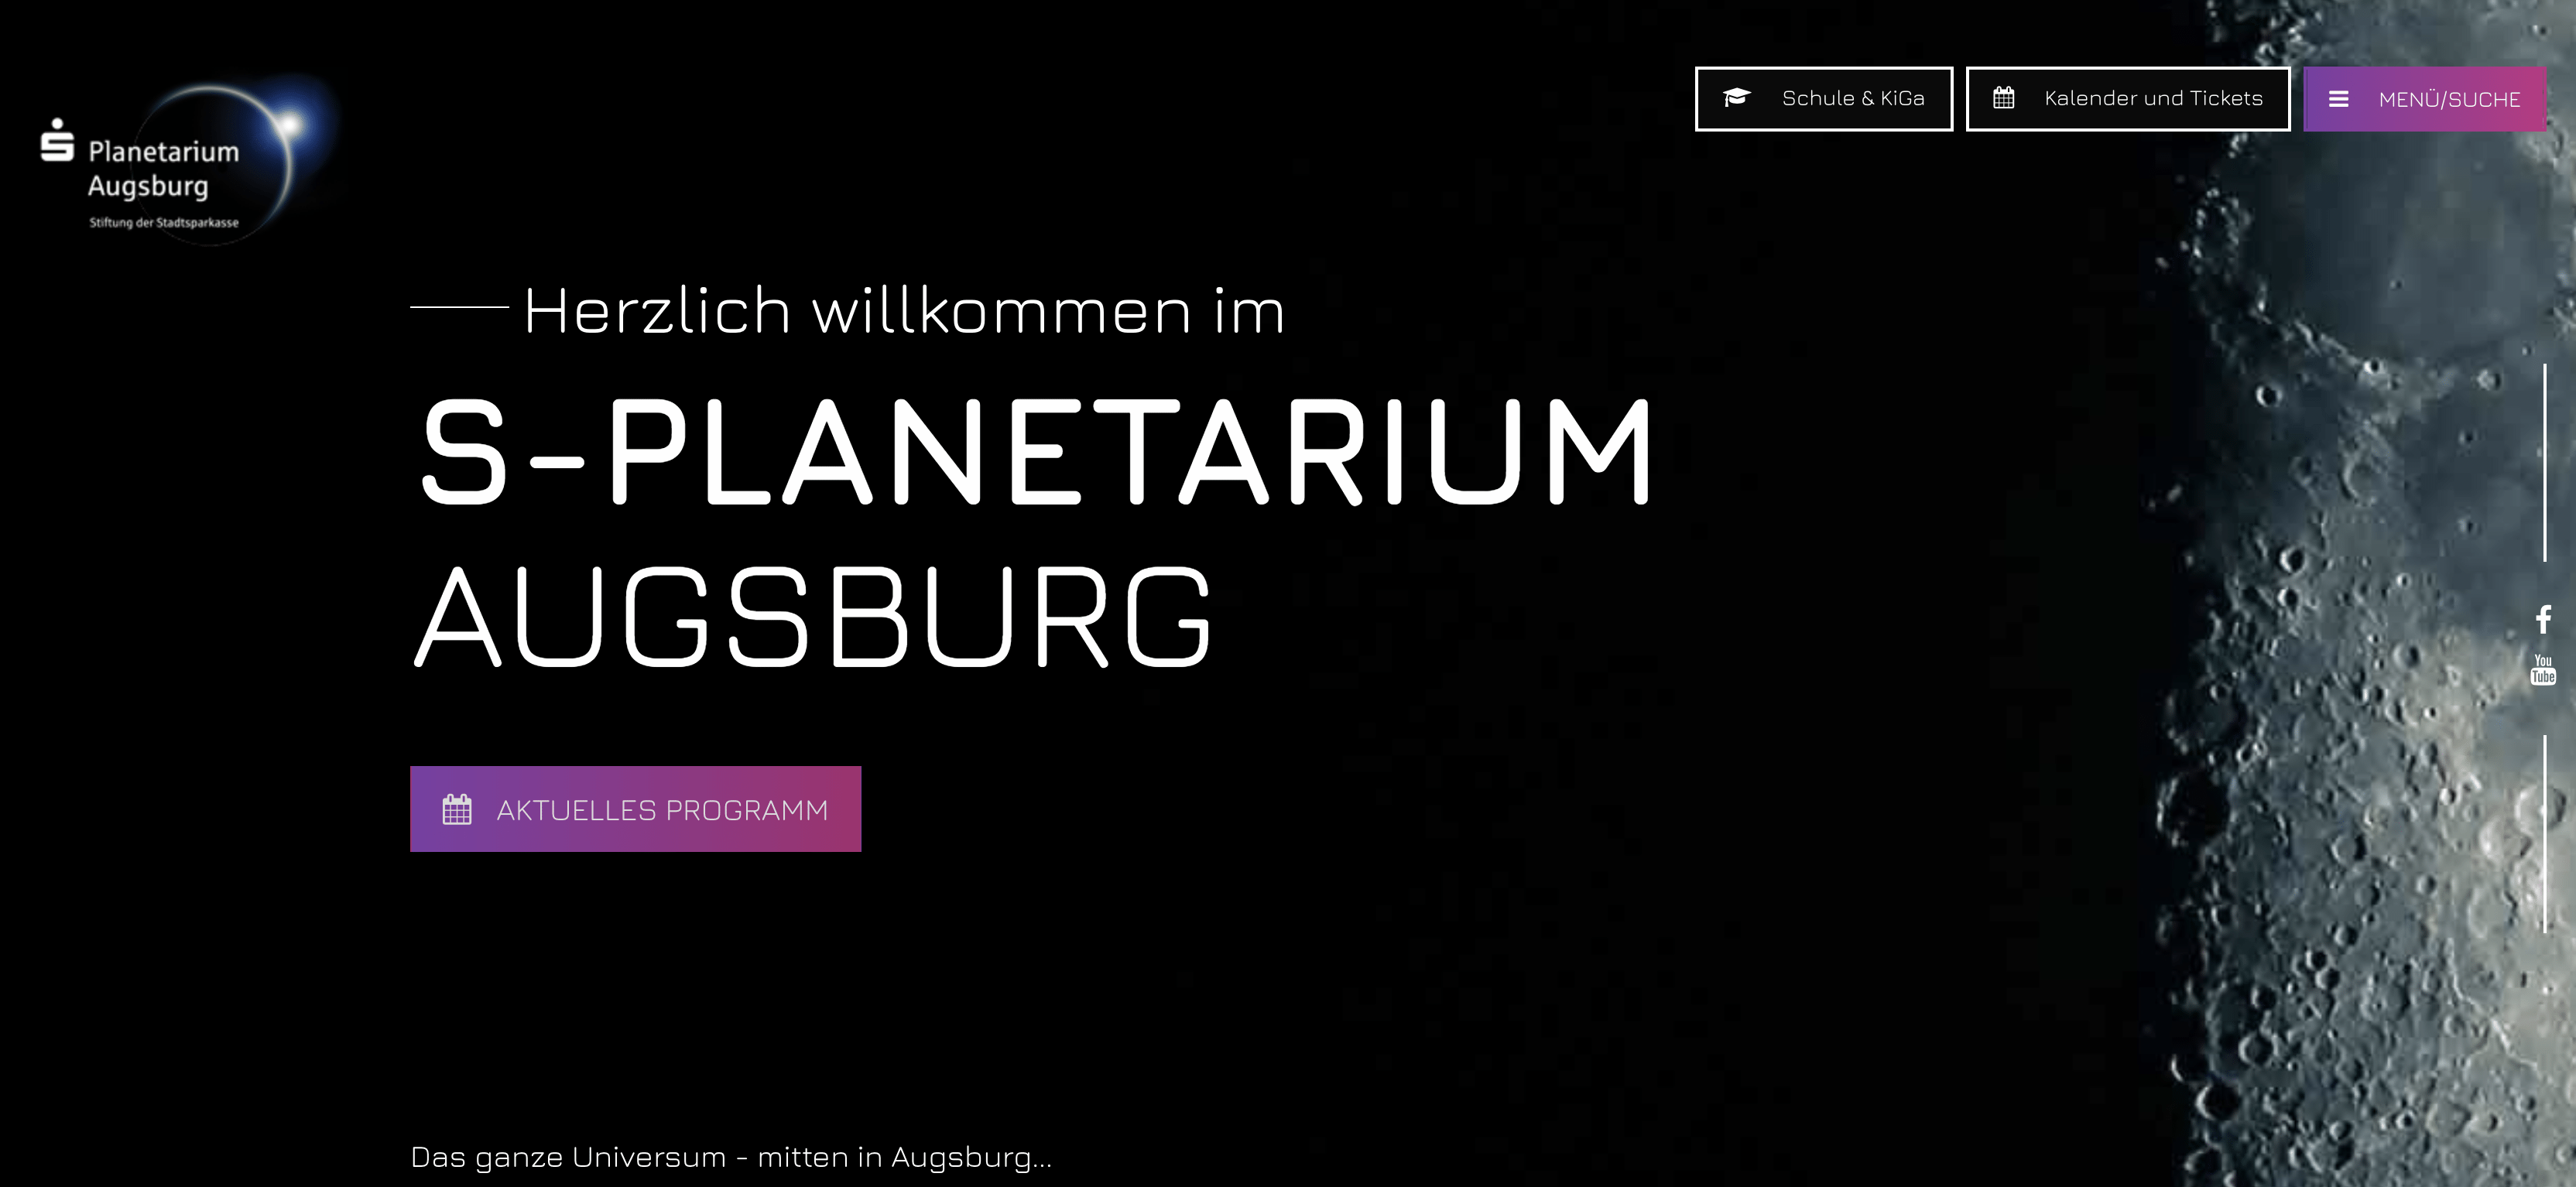 Webdesign S-Planetarium Augsburg